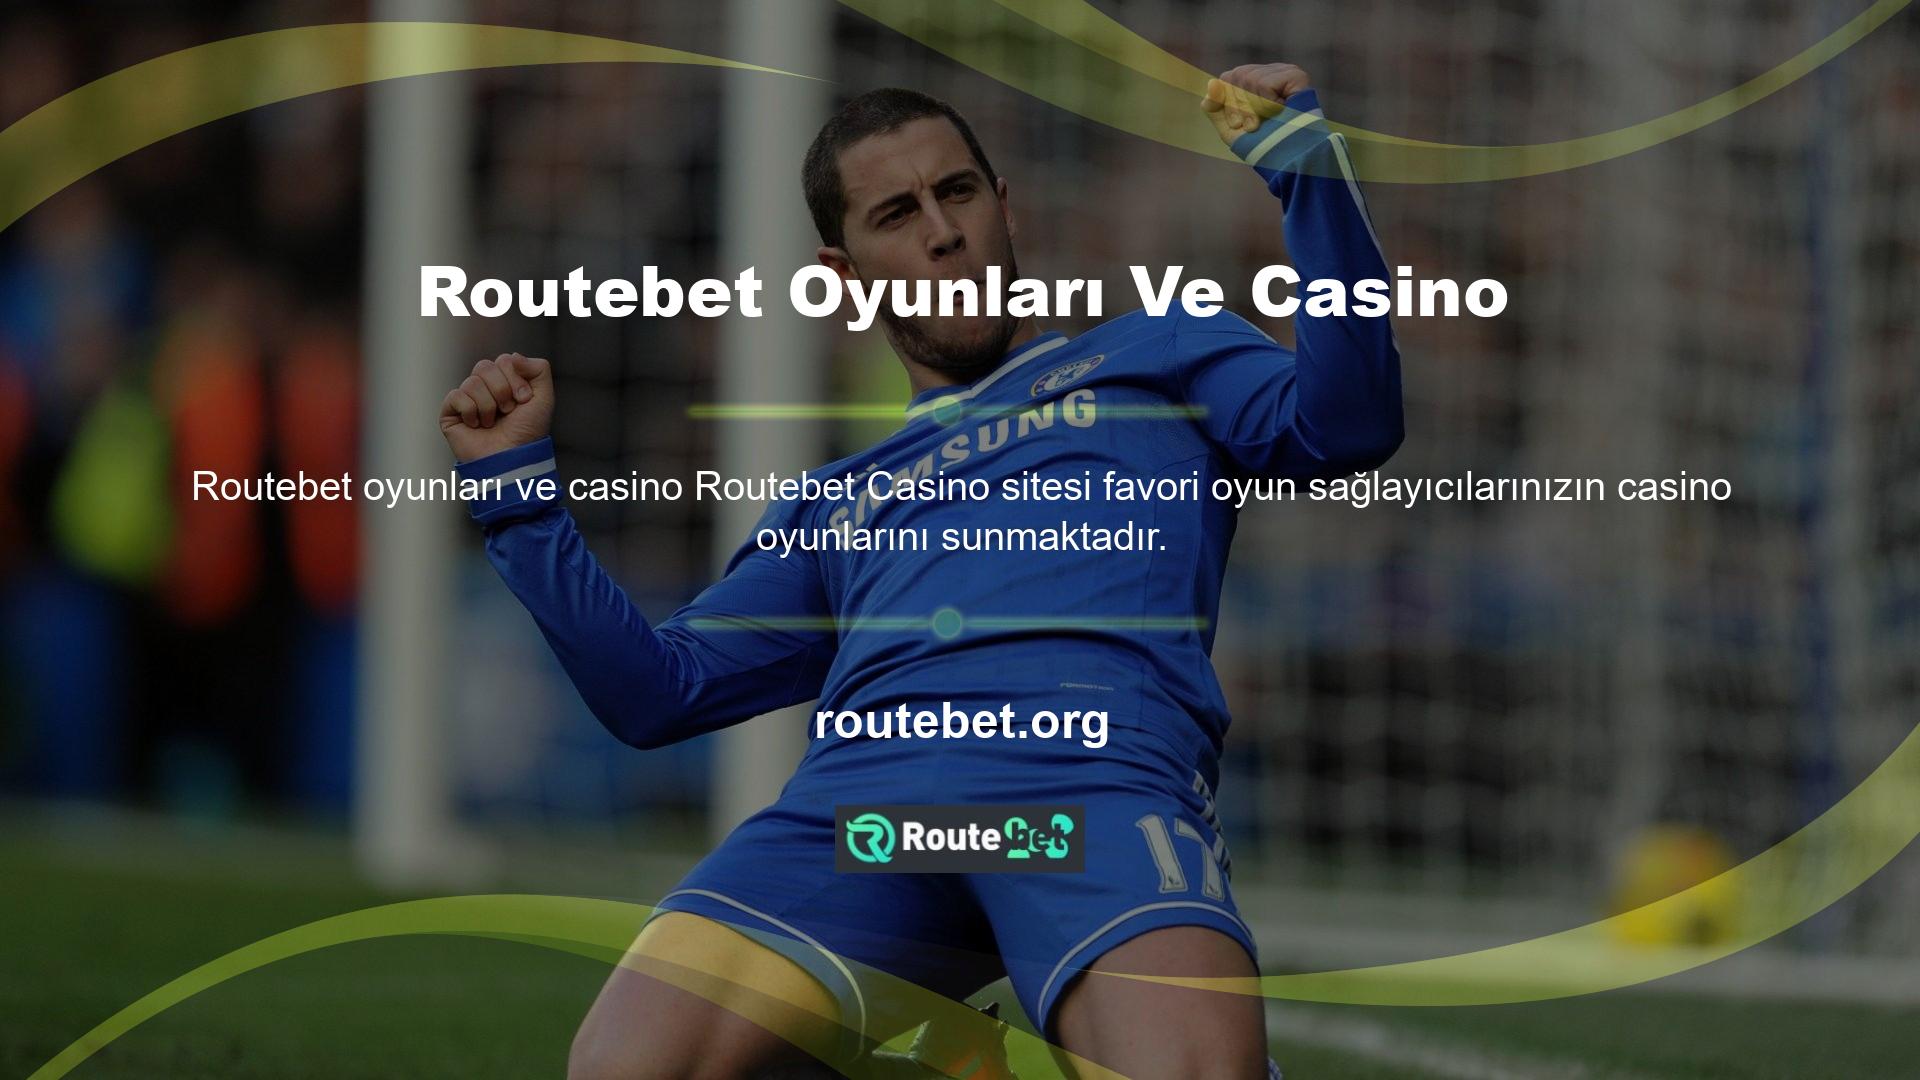 Routebet eğlenceli ve kaliteli casino oyunlarında jackpotlar dağıtılmaktadır